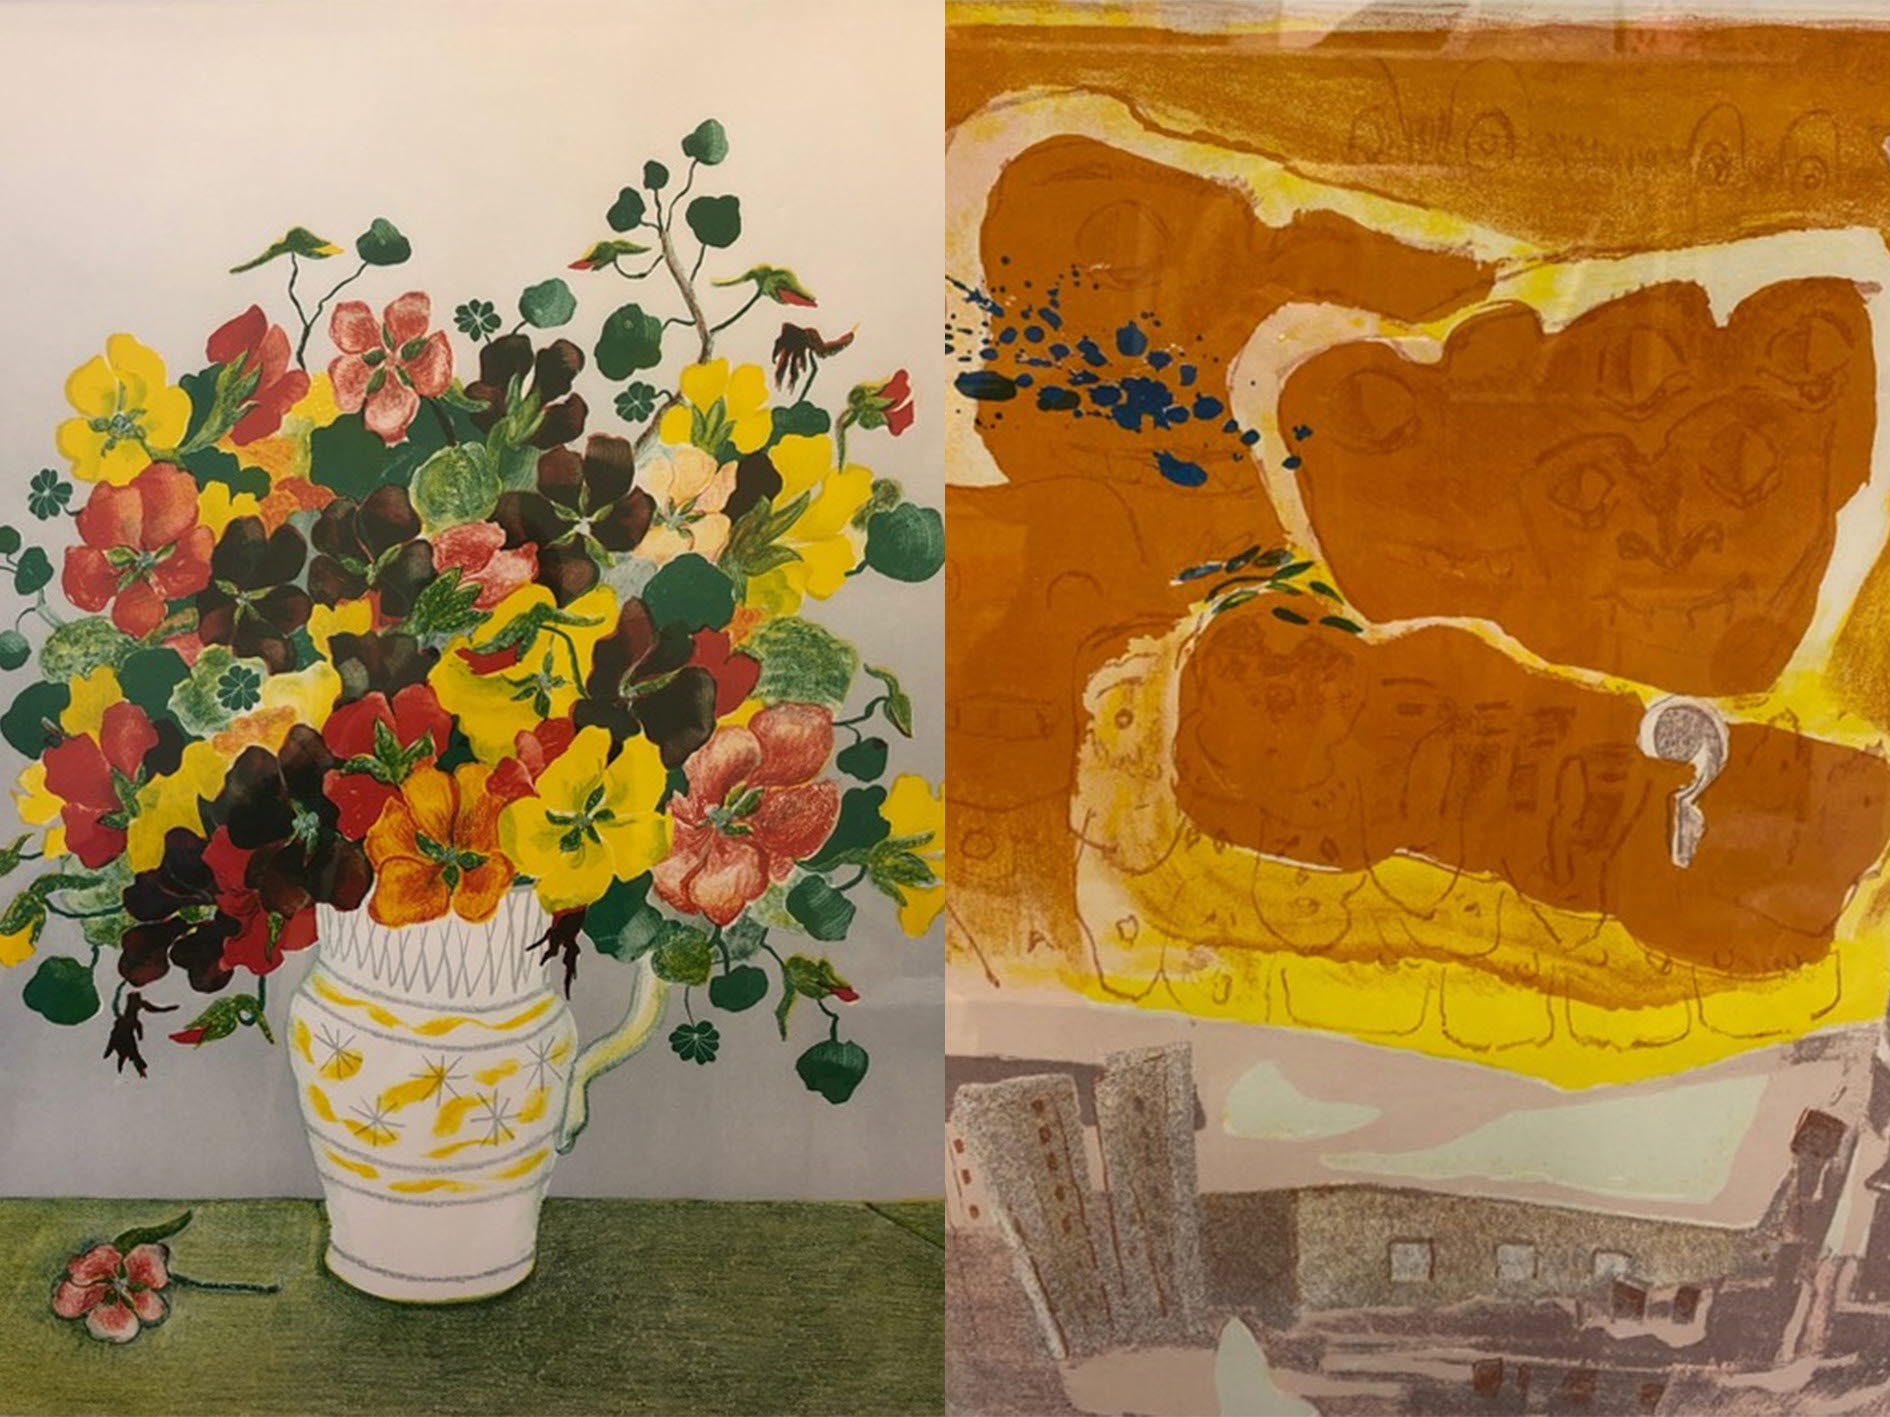 alt='Två tavlor. Den första tavlan föreställer en vas med blommor. Den andra tavlan föreställer en byggnad där ansikten avtecknar sig i molnen.'